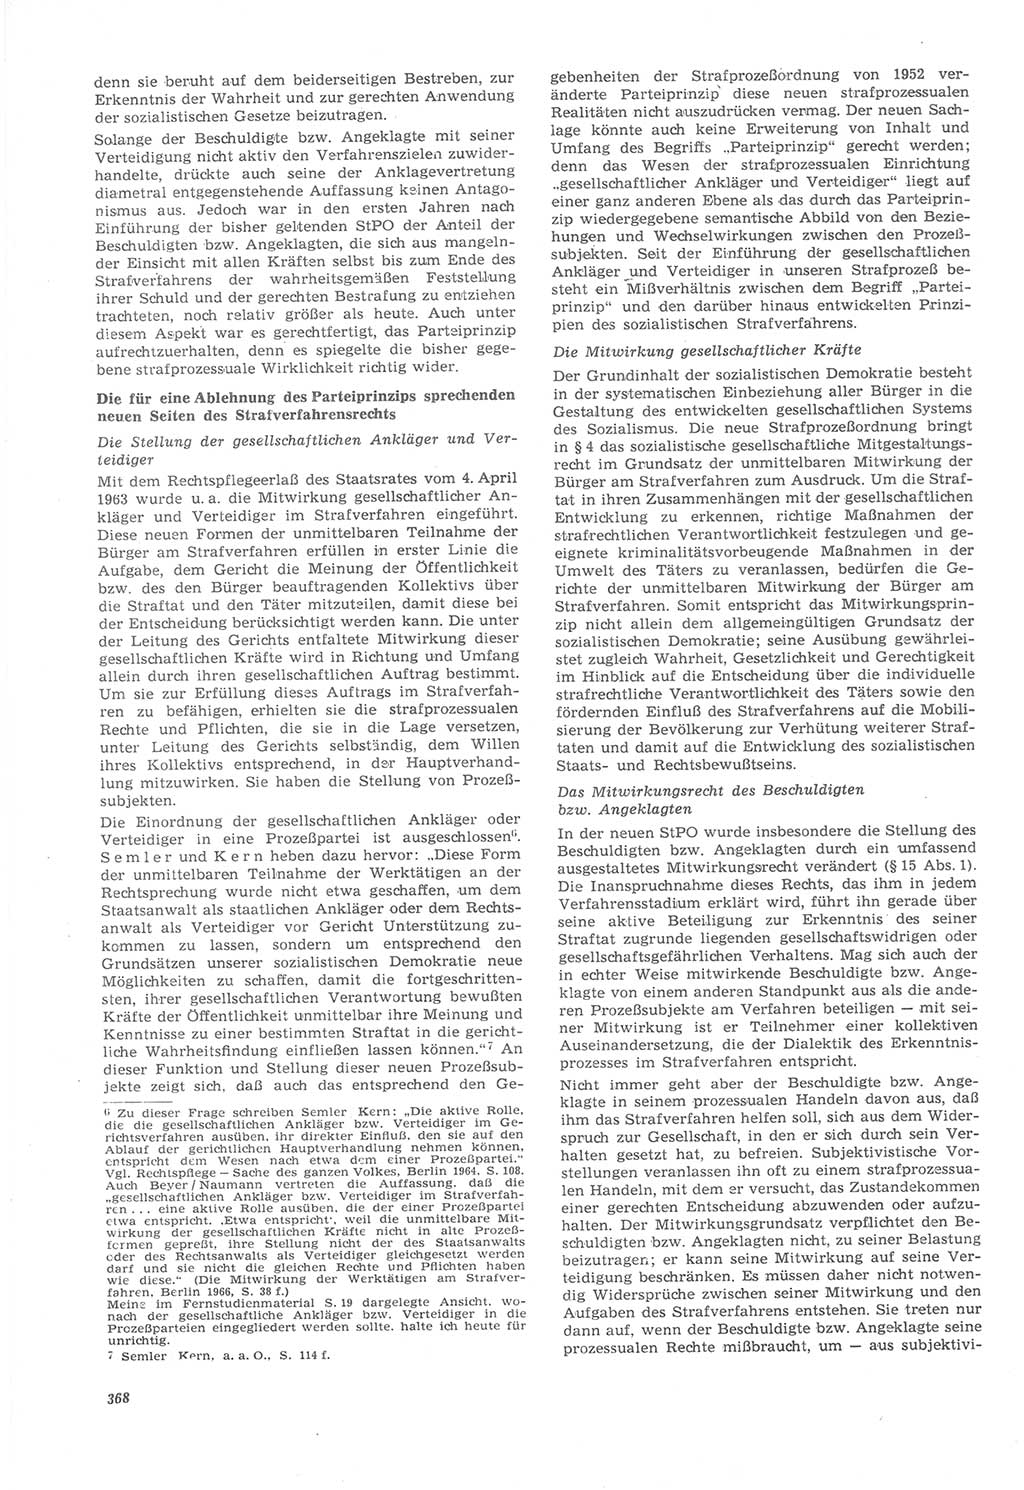 Neue Justiz (NJ), Zeitschrift für Recht und Rechtswissenschaft [Deutsche Demokratische Republik (DDR)], 22. Jahrgang 1968, Seite 368 (NJ DDR 1968, S. 368)